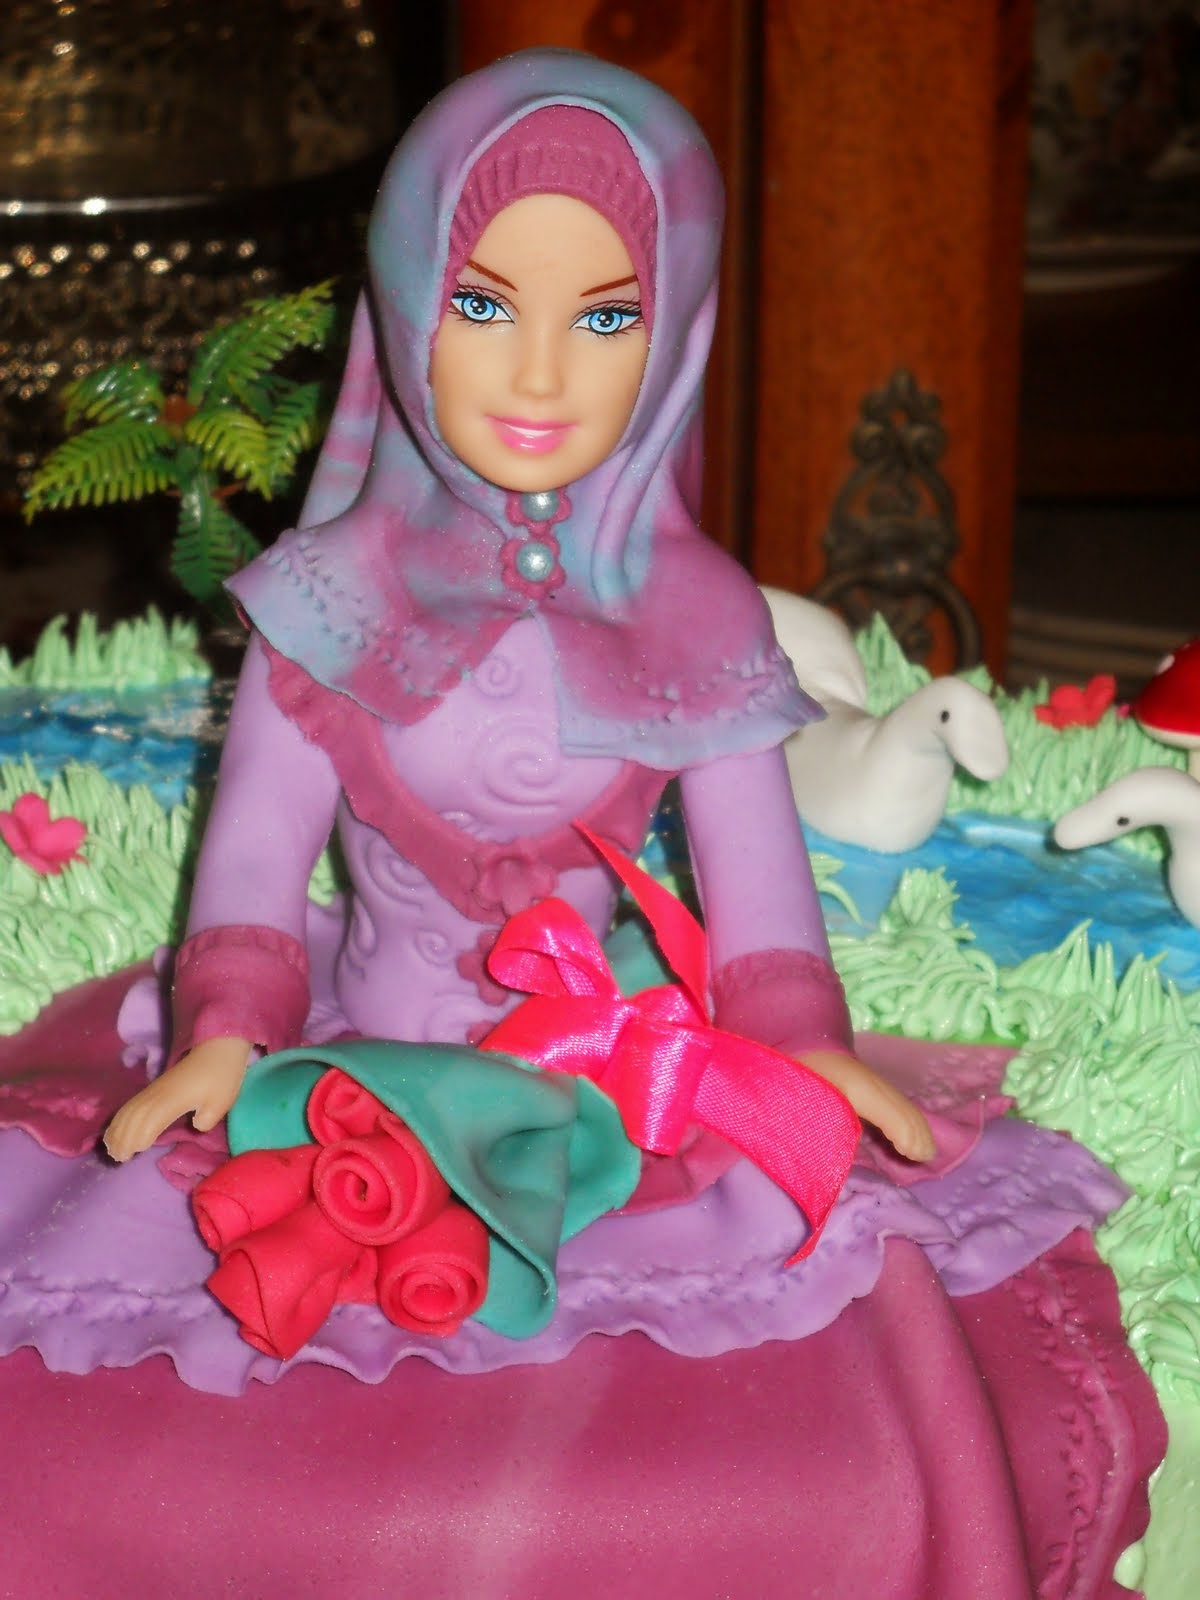 Gambar Boneka Barbie Muslim Cantik Dan Keren Untuk Anak 2015